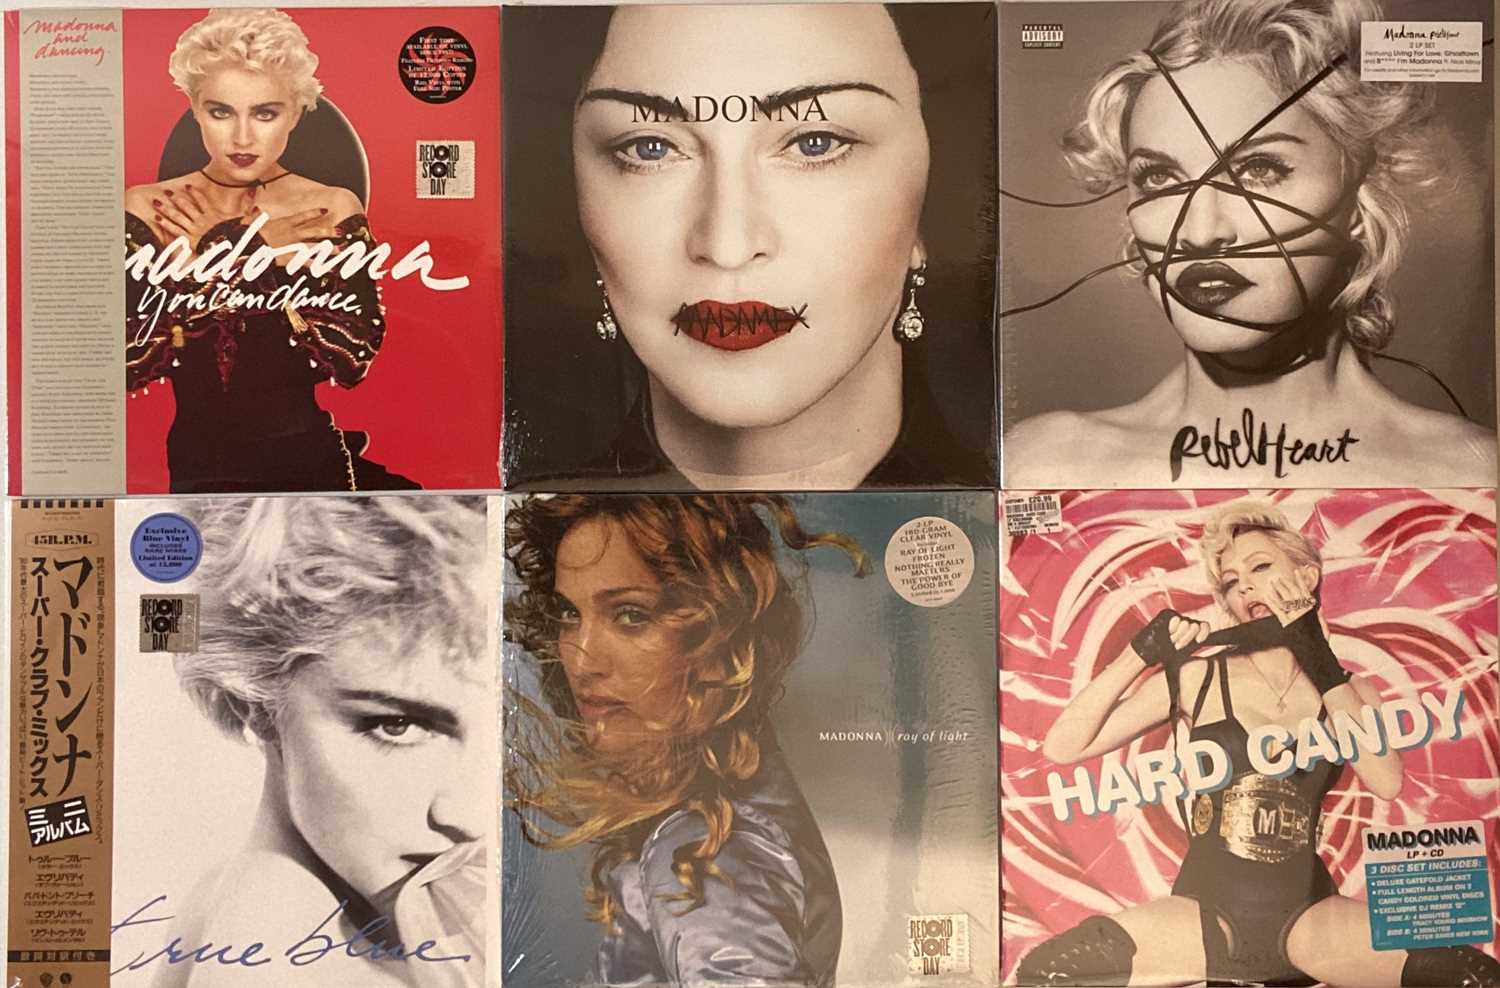 You Can Dance Remix Album LP Madonna Vinyl Record 